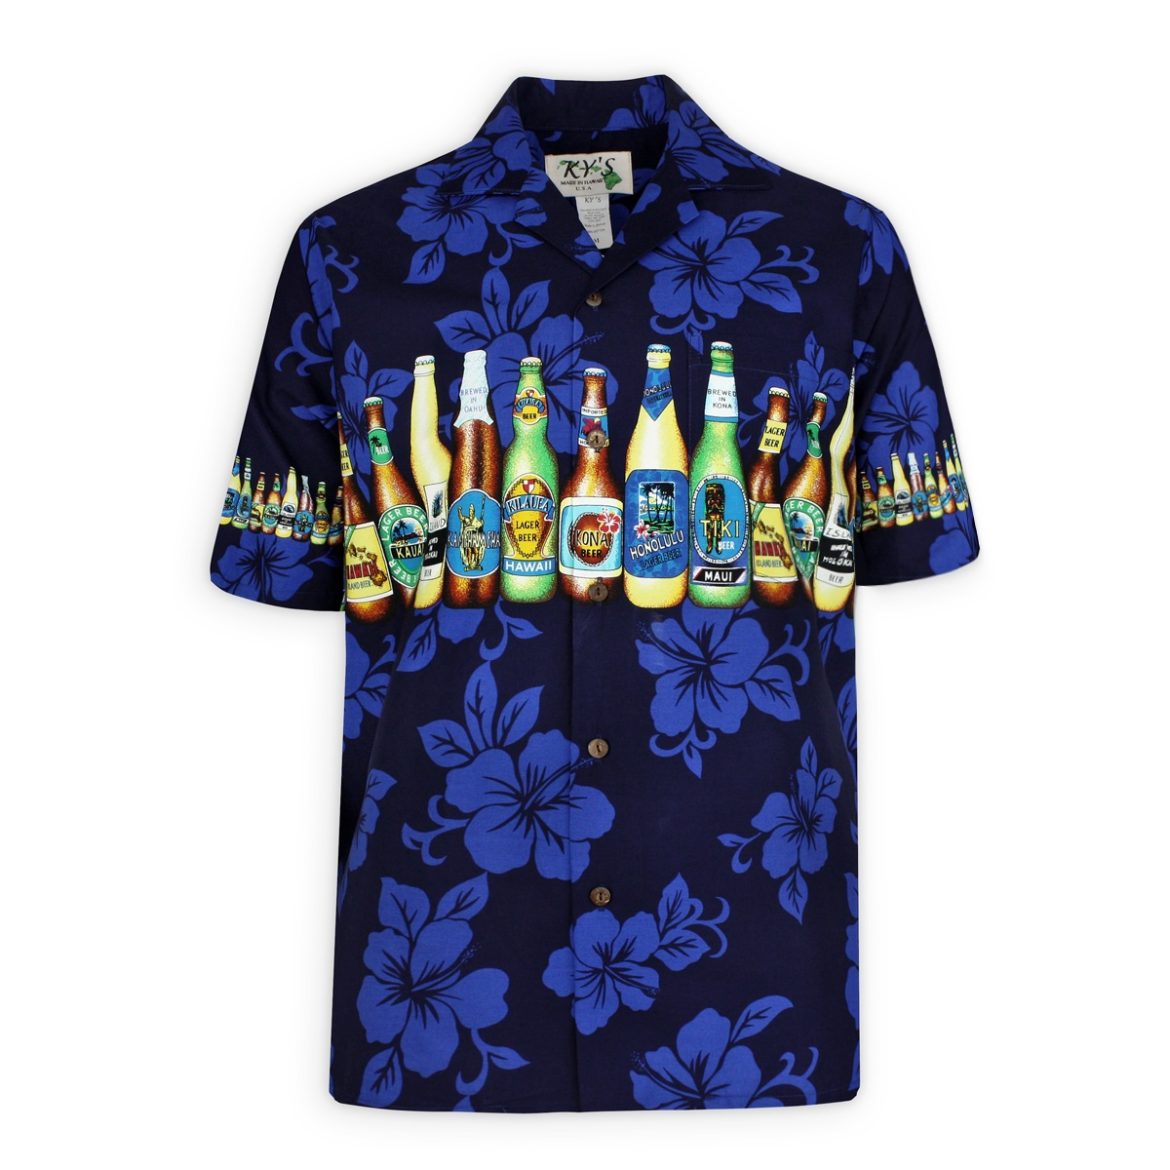 Mens Hawaiian Shirt - Bottoms Up- Navy Blue - Beer Bottle Shirt